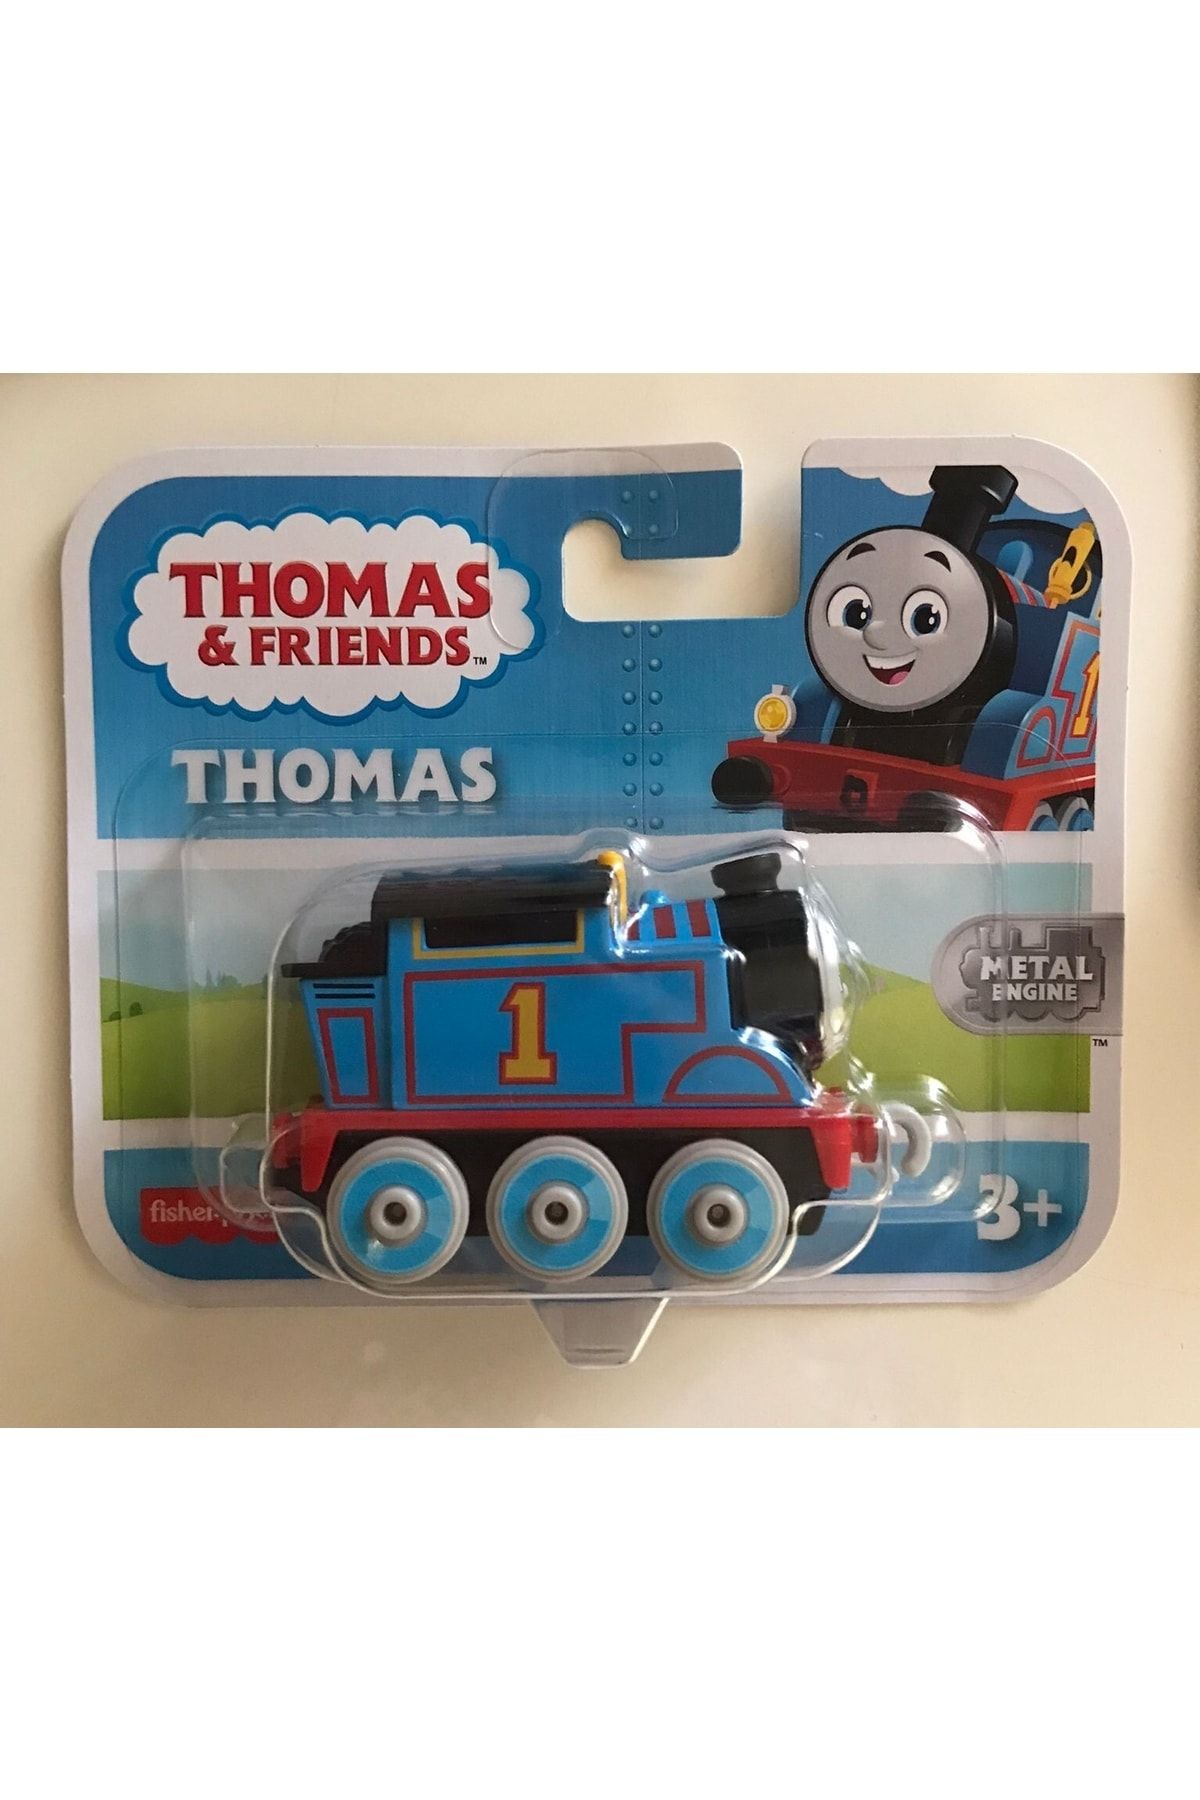 Thomas Friends Thomas & Friends Thomas